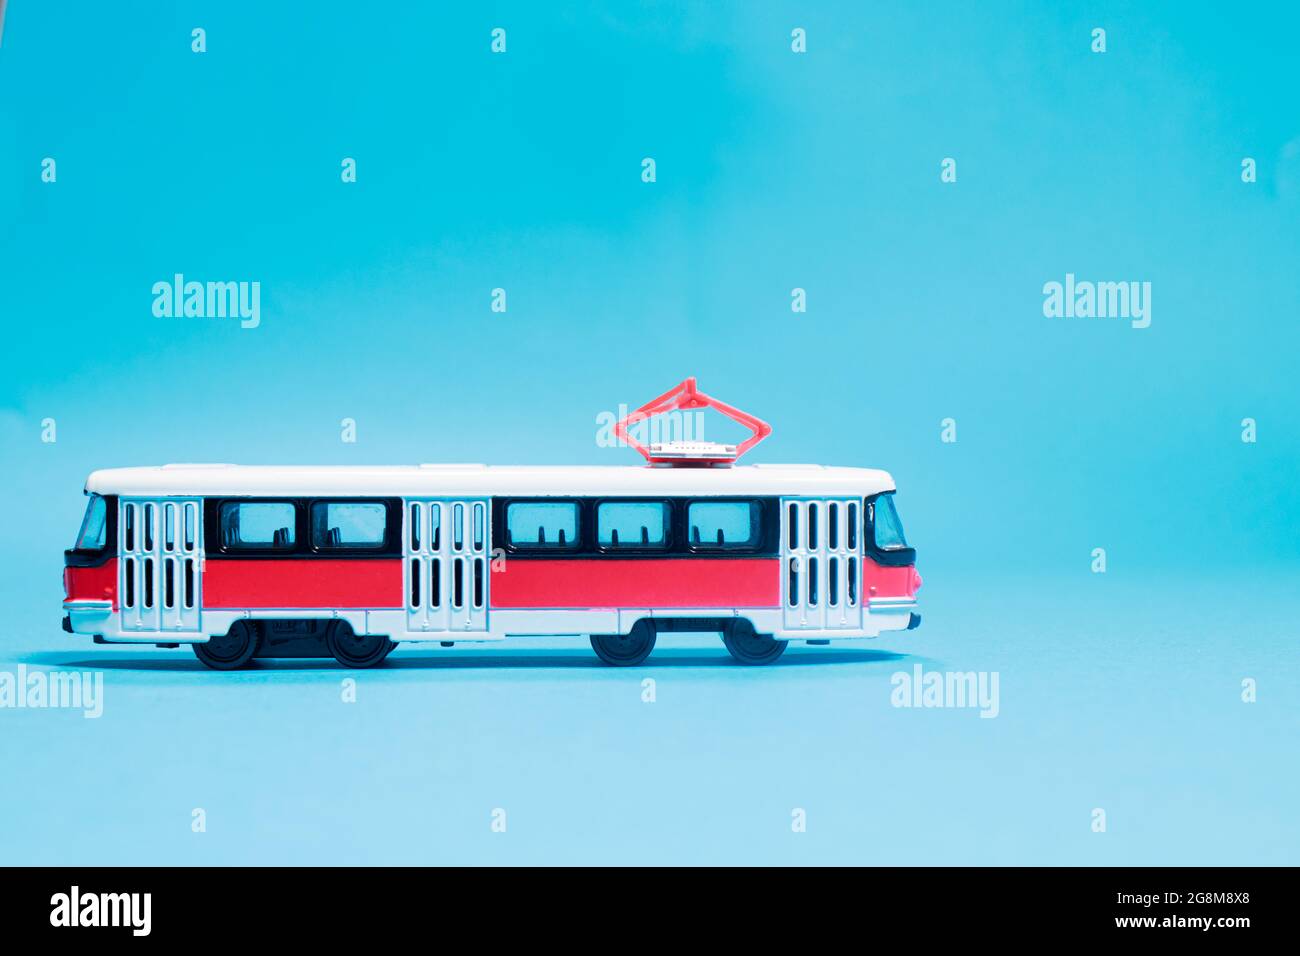 Kinderspielzeug rot weiß Tram auf einem blauen Hintergrund Kopie Platz für Text. Spielzeug für einen Spielwarenladen, Autos für einen Jungen. Stockfoto